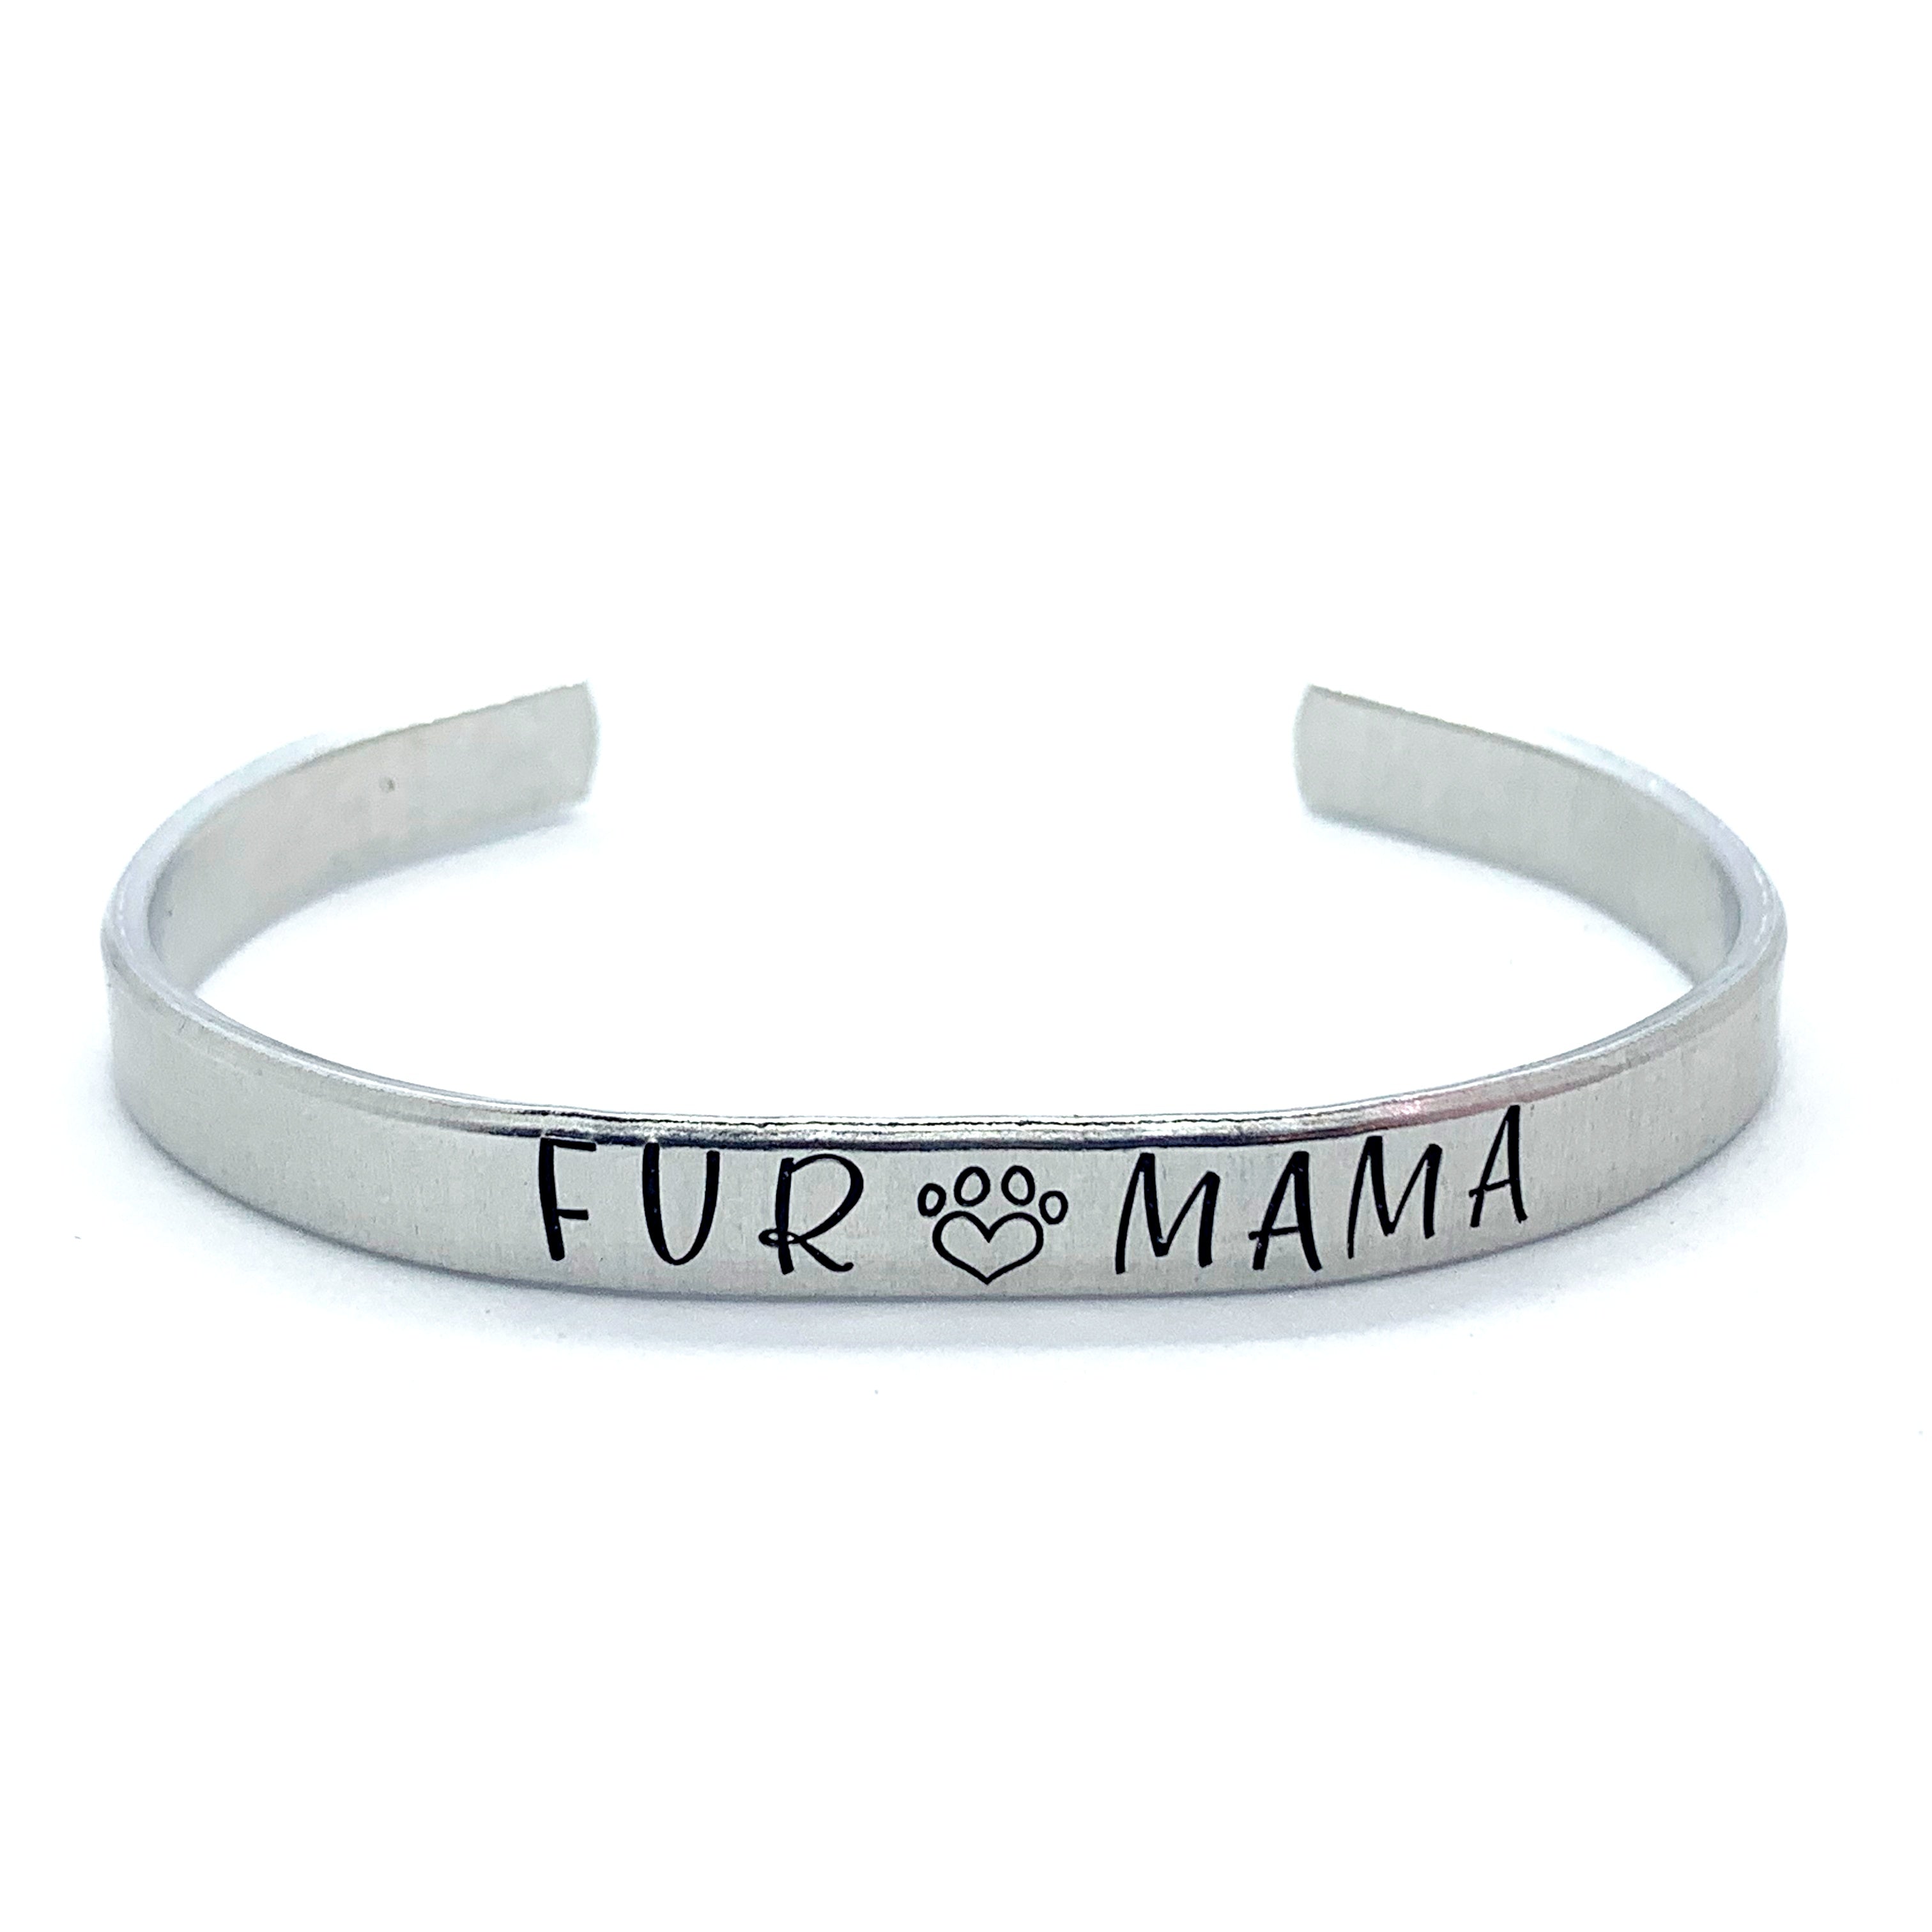 ¼ inch Aluminum Cuff - Fur Mama